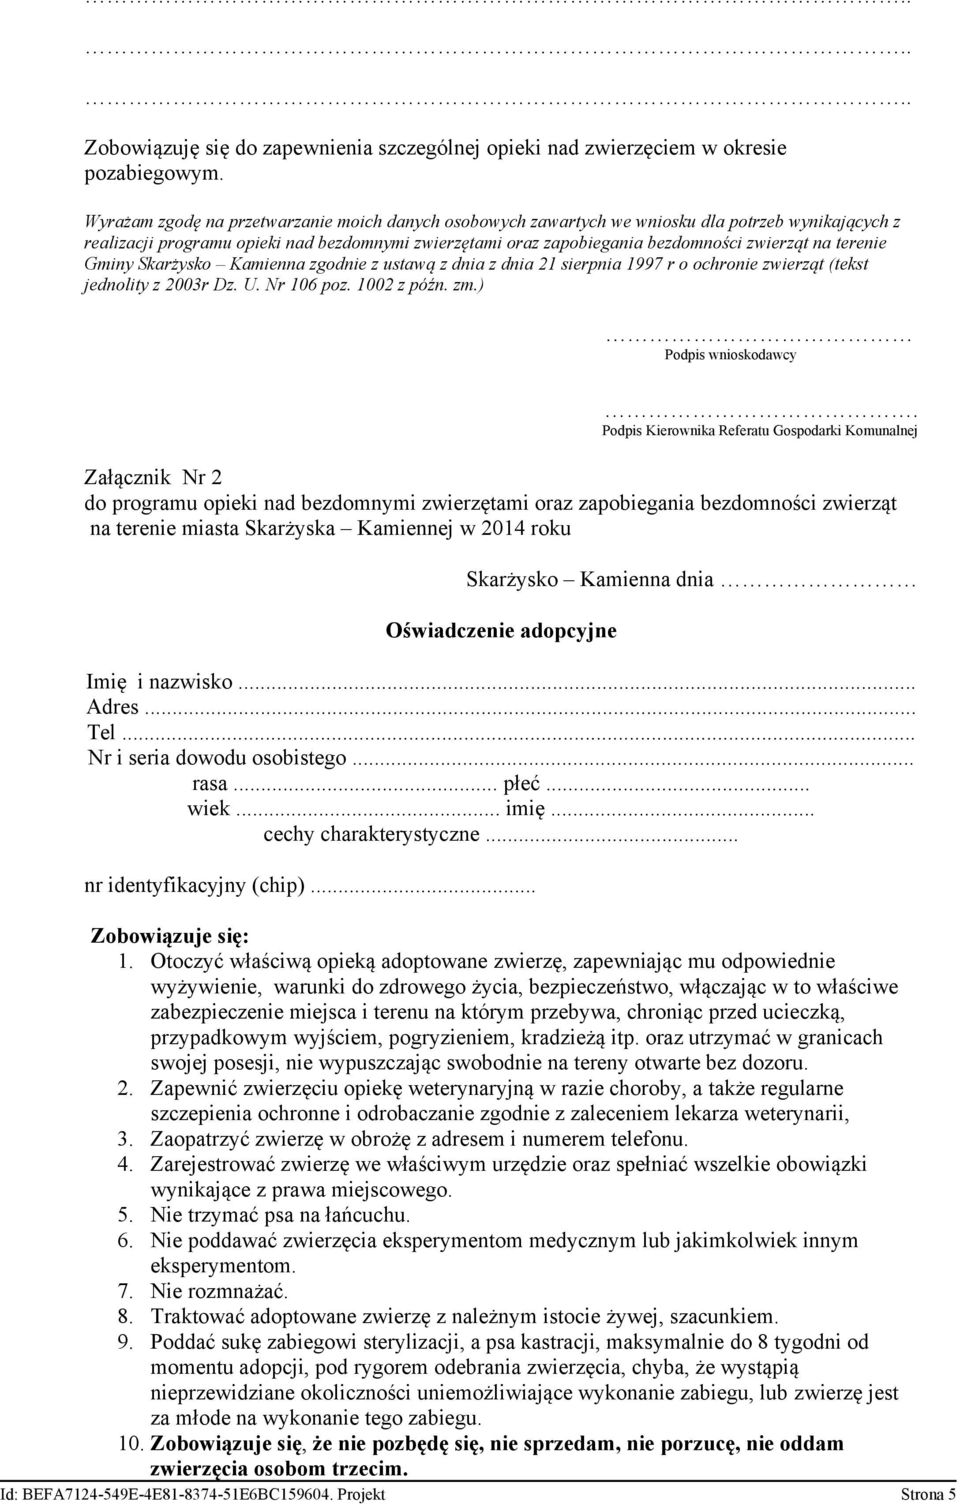 terenie Gminy Skarżysko Kamienna zgodnie z ustawą z dnia z dnia 21 sierpnia 1997 r o ochronie zwierząt (tekst jednolity z 2003r Dz. U. Nr 106 poz. 1002 z późn. zm.) Podpis wnioskodawcy.